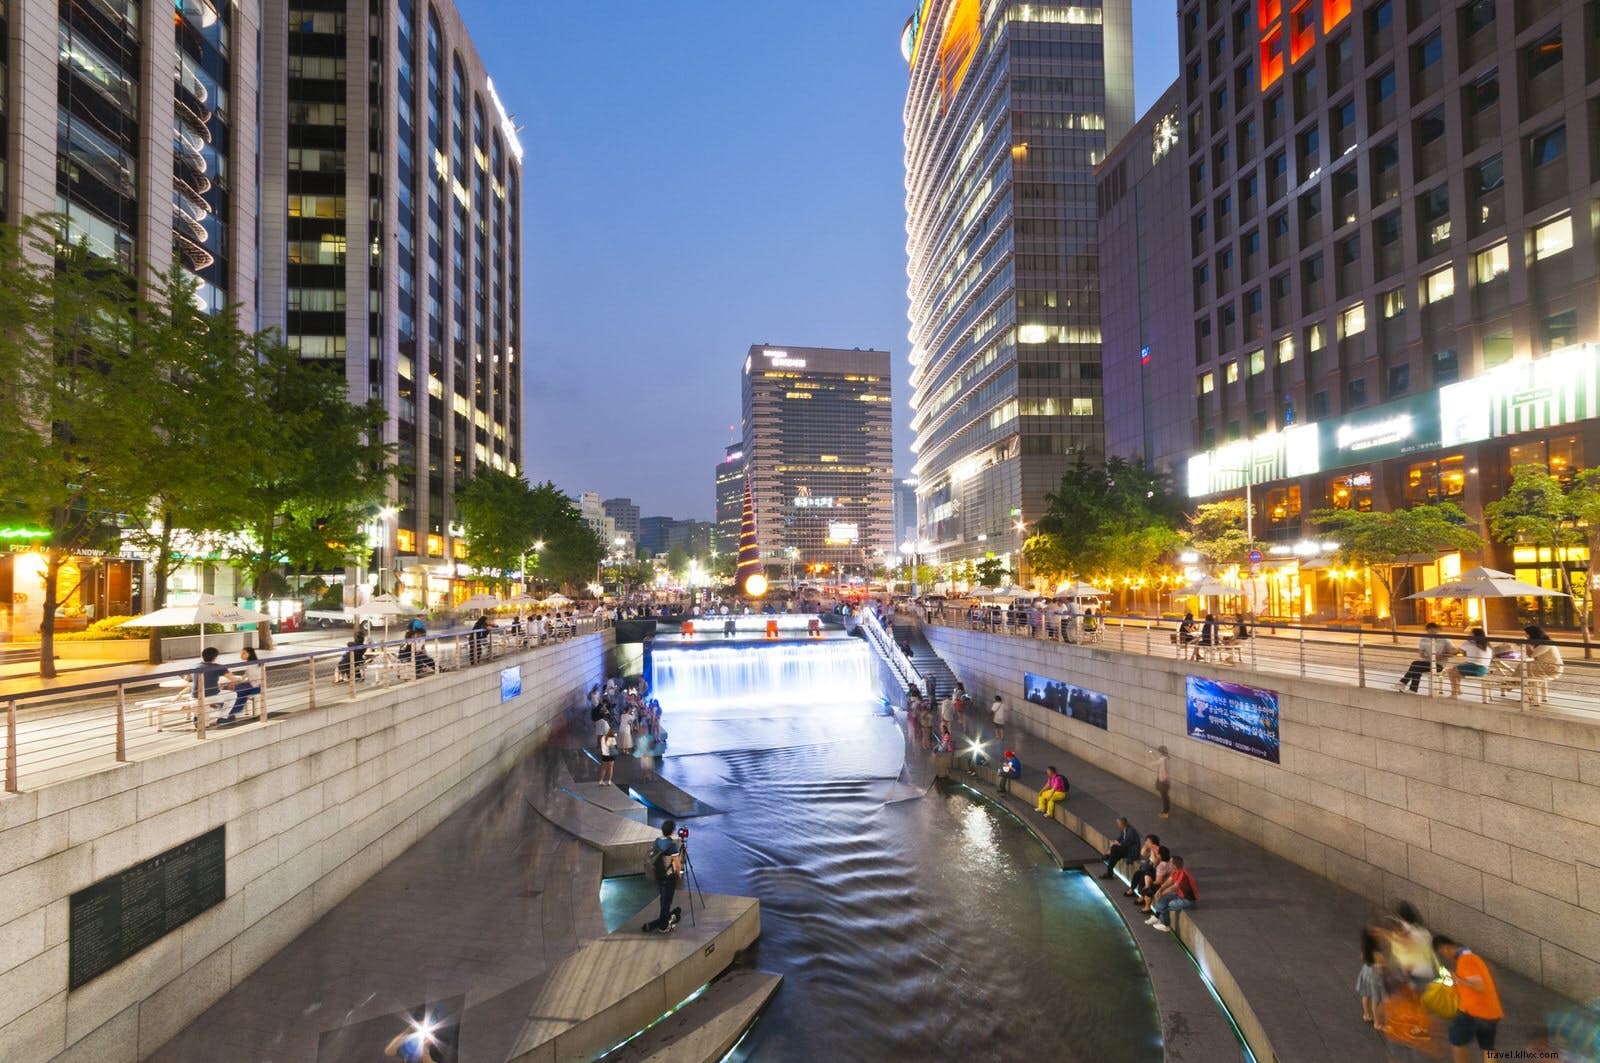 El dinámico paisaje urbano de Seúl:un recorrido arquitectónico por la capital de Corea del Sur 